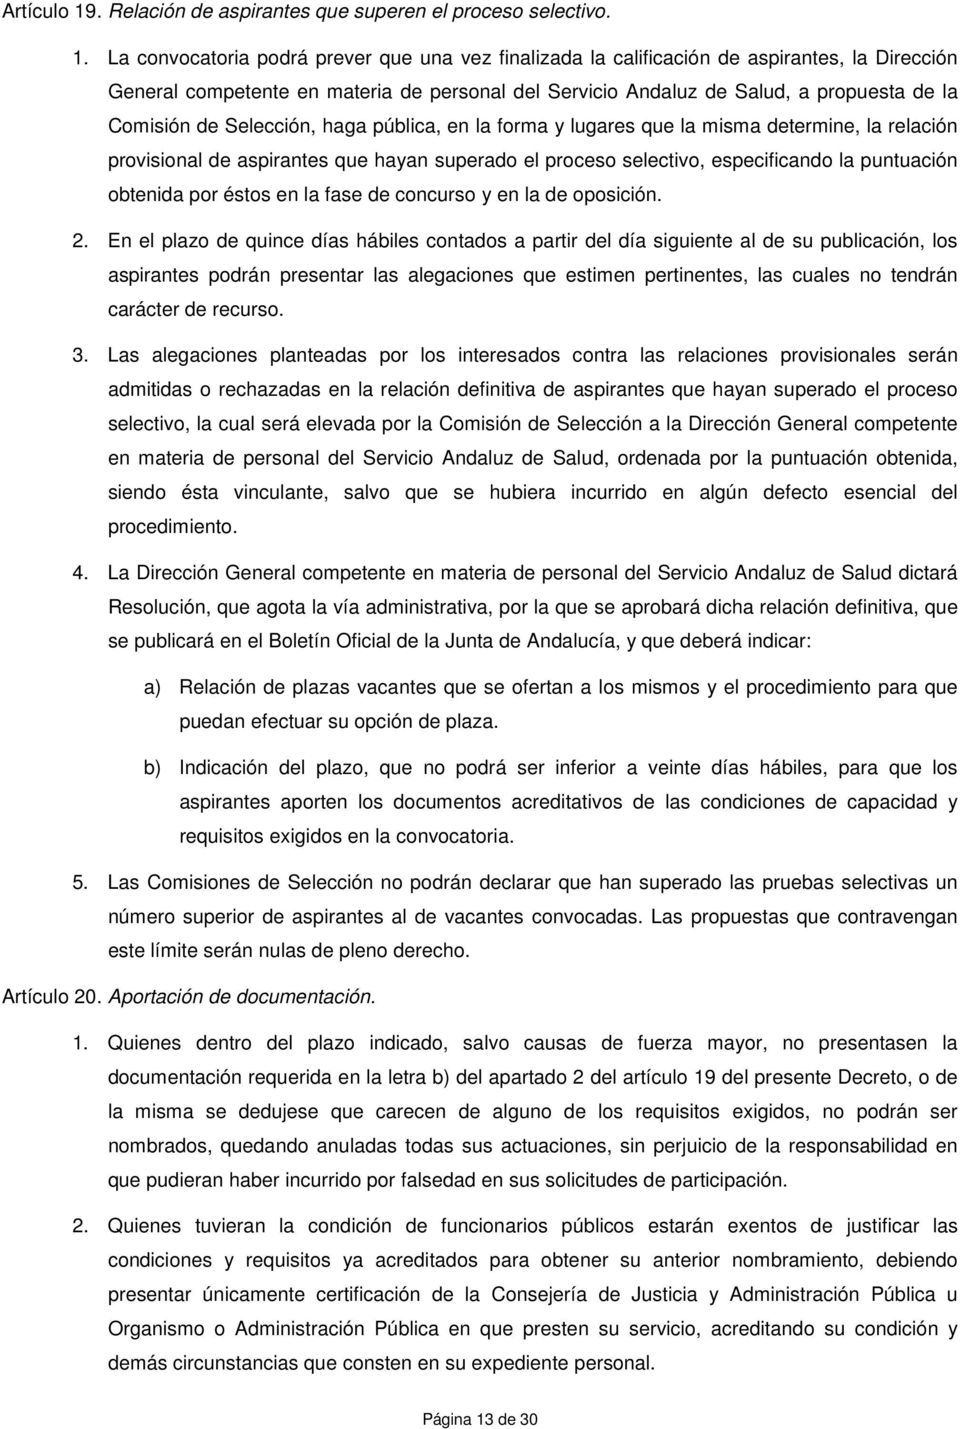 La convocatoria podrá prever que una vez finalizada la calificación de aspirantes, la Dirección General competente en materia de personal del Servicio Andaluz de Salud, a propuesta de la Comisión de